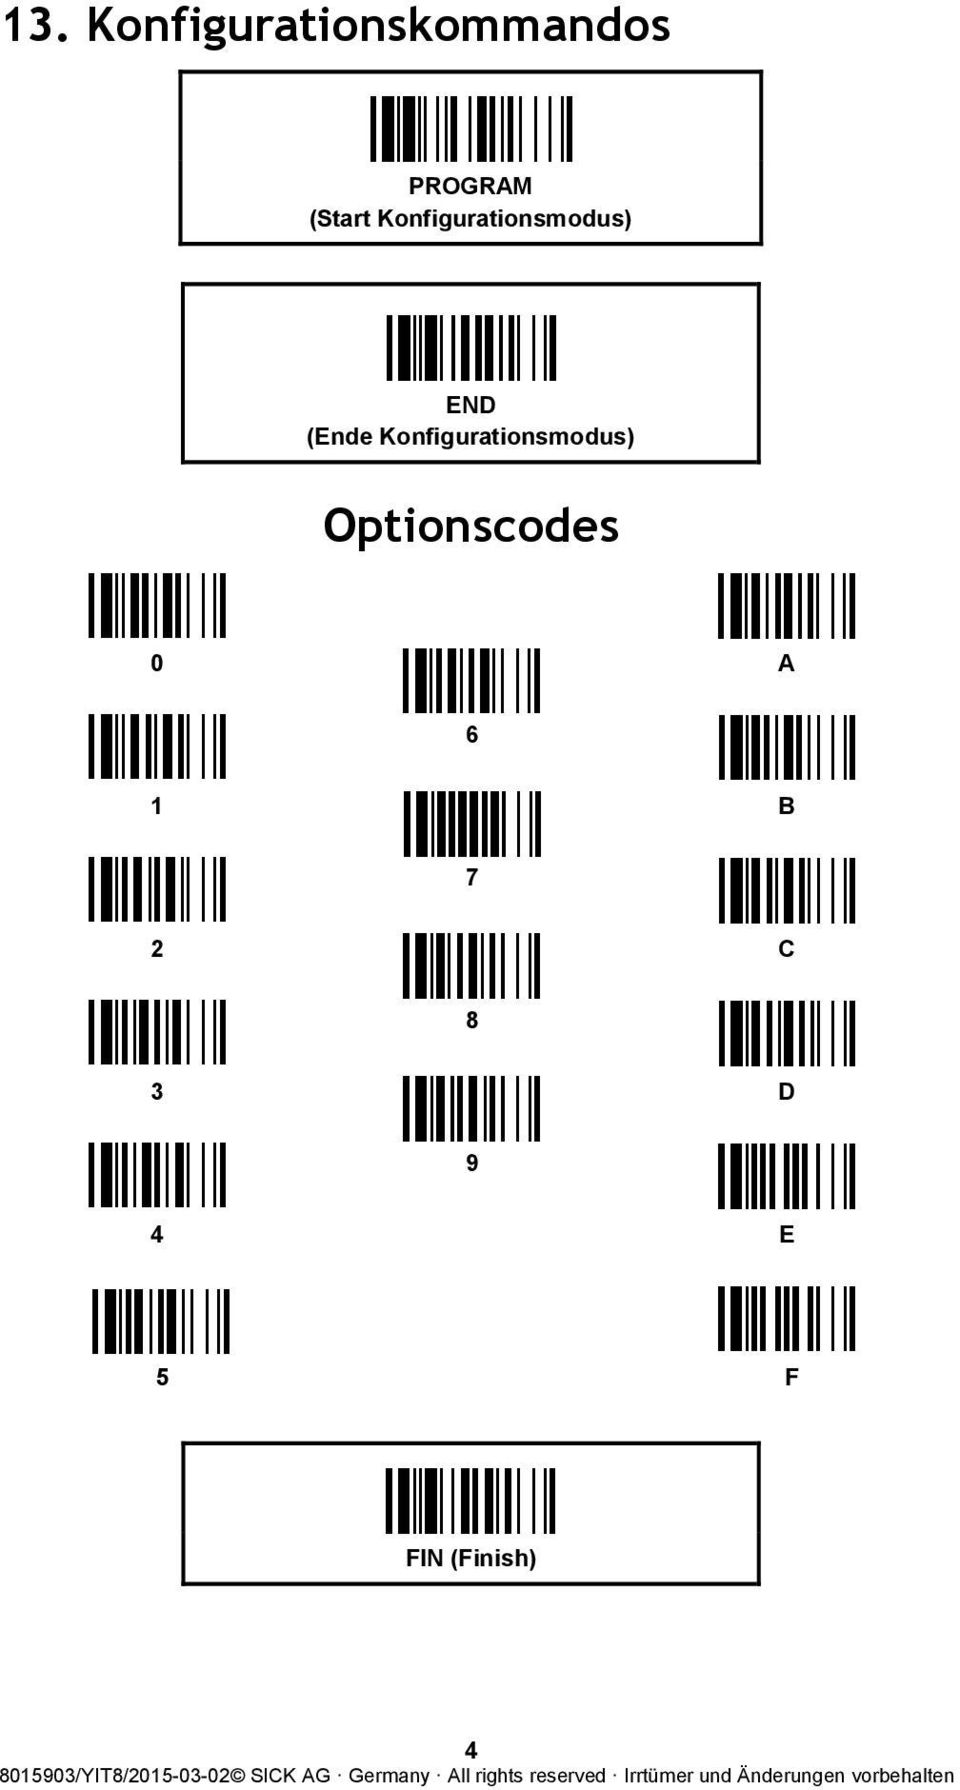 Optionscodes A 6 B 7 C 8 D 9 E 5 F (Finish)